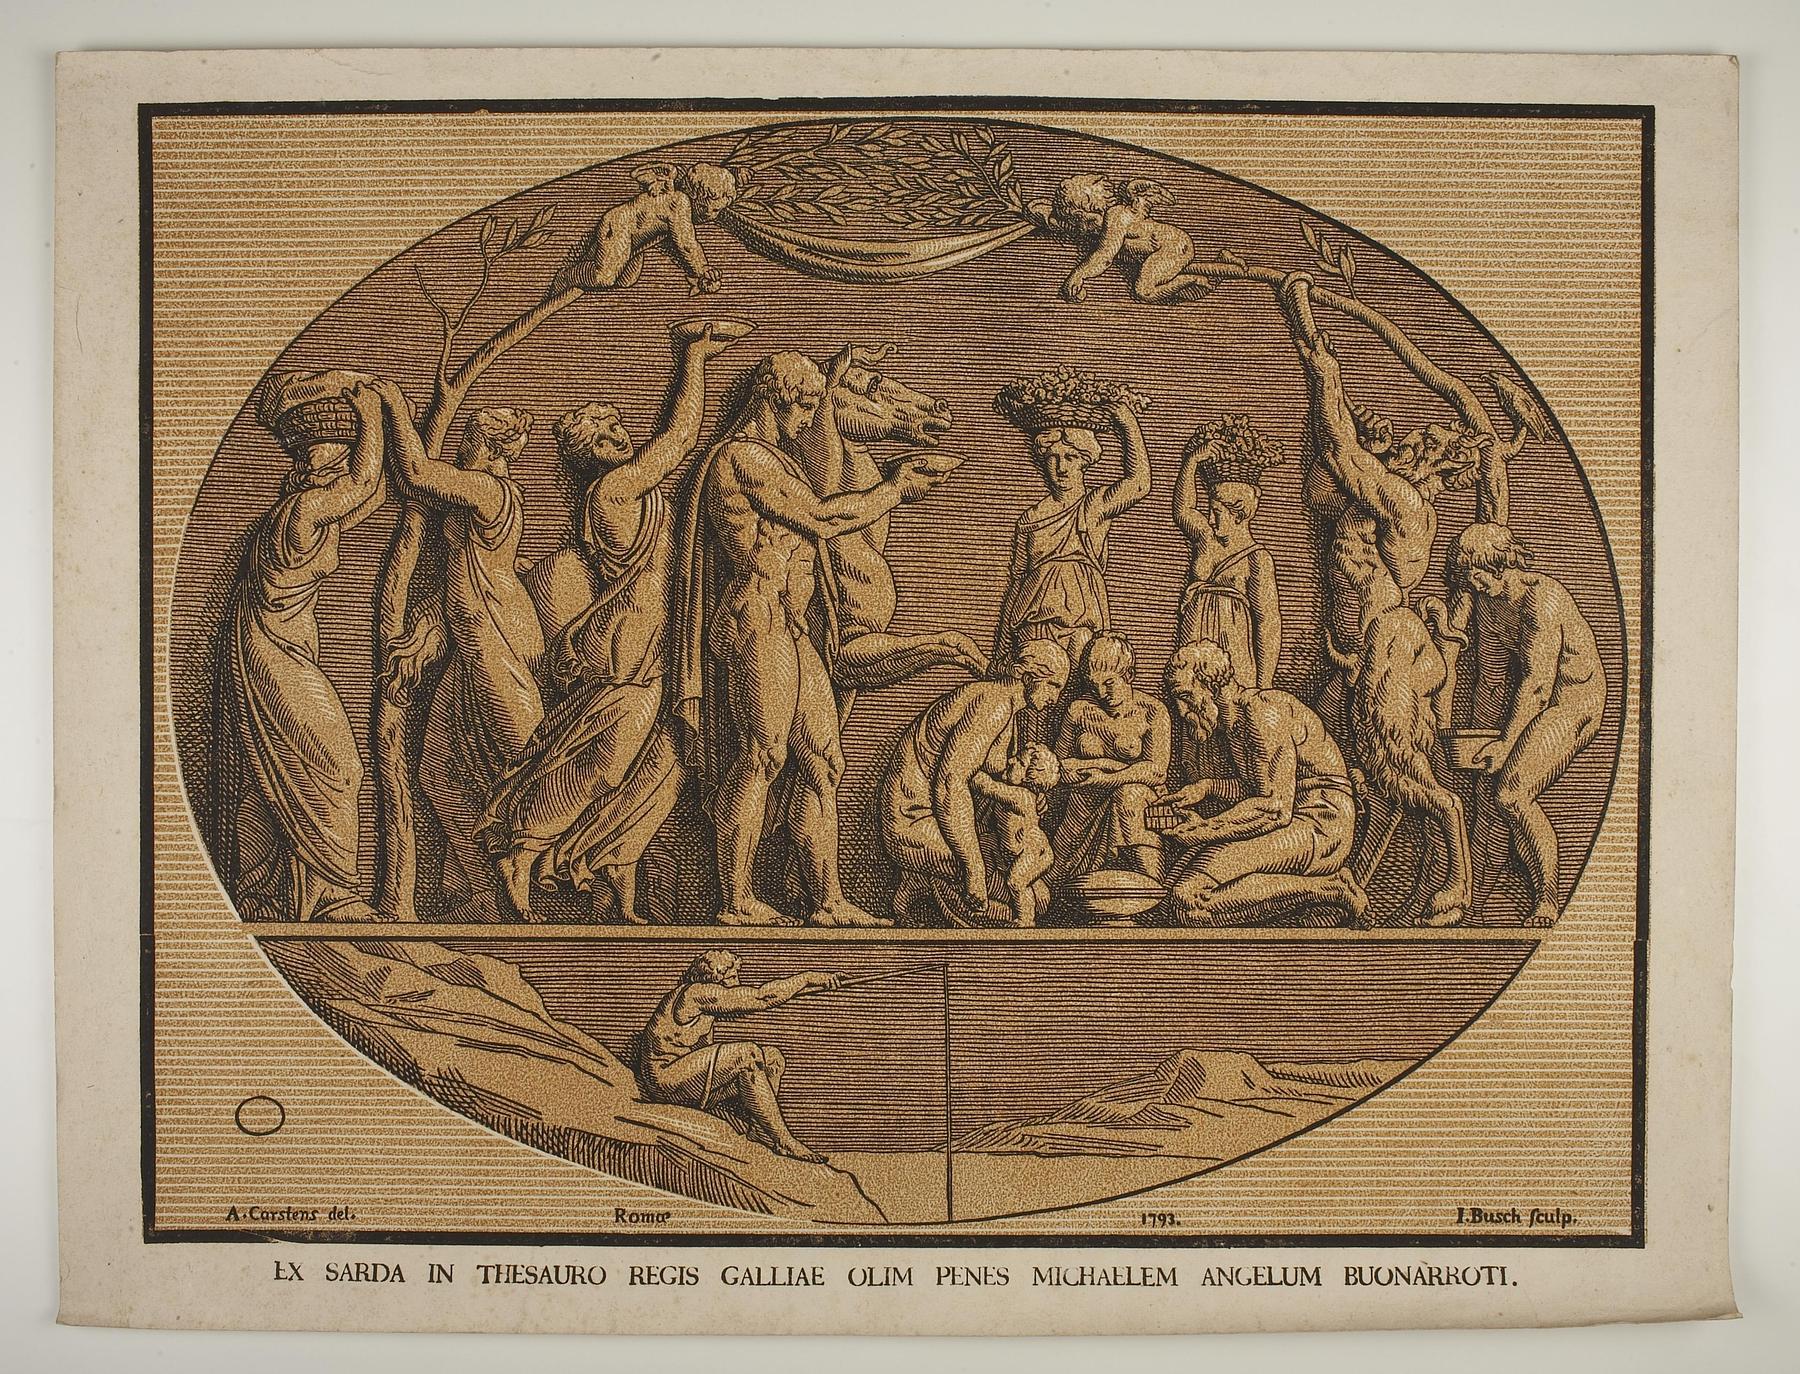 Bakkanal også kendt som "Michelangelos signetring", E1487